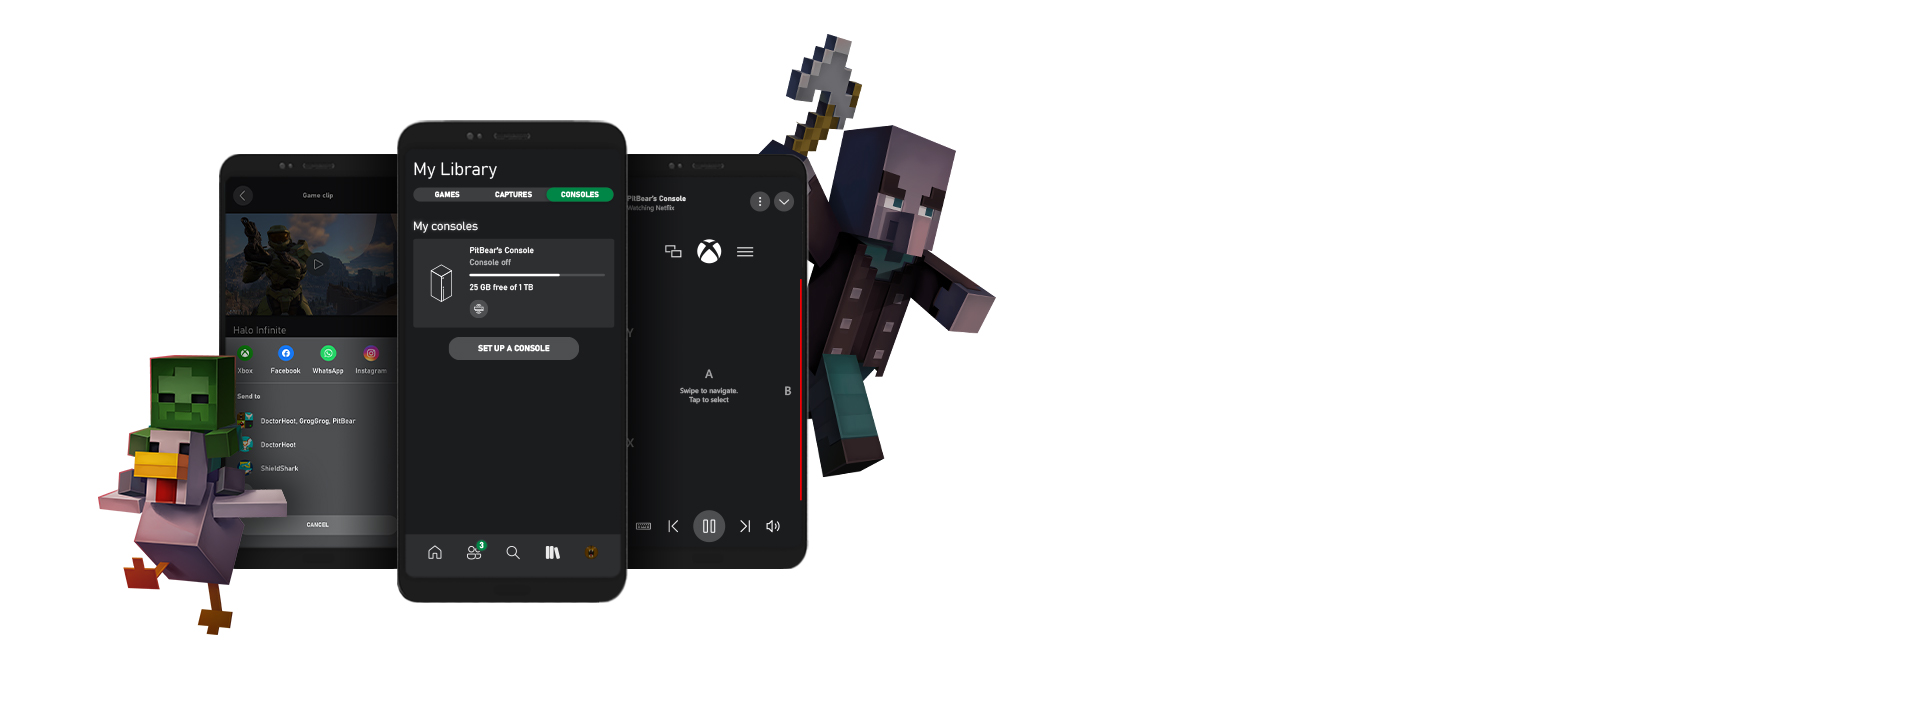 Alcuni personaggi di Minecraft attorno a vari screenshot dell'interfaccia utente dell'app Xbox per dispositivi mobili.